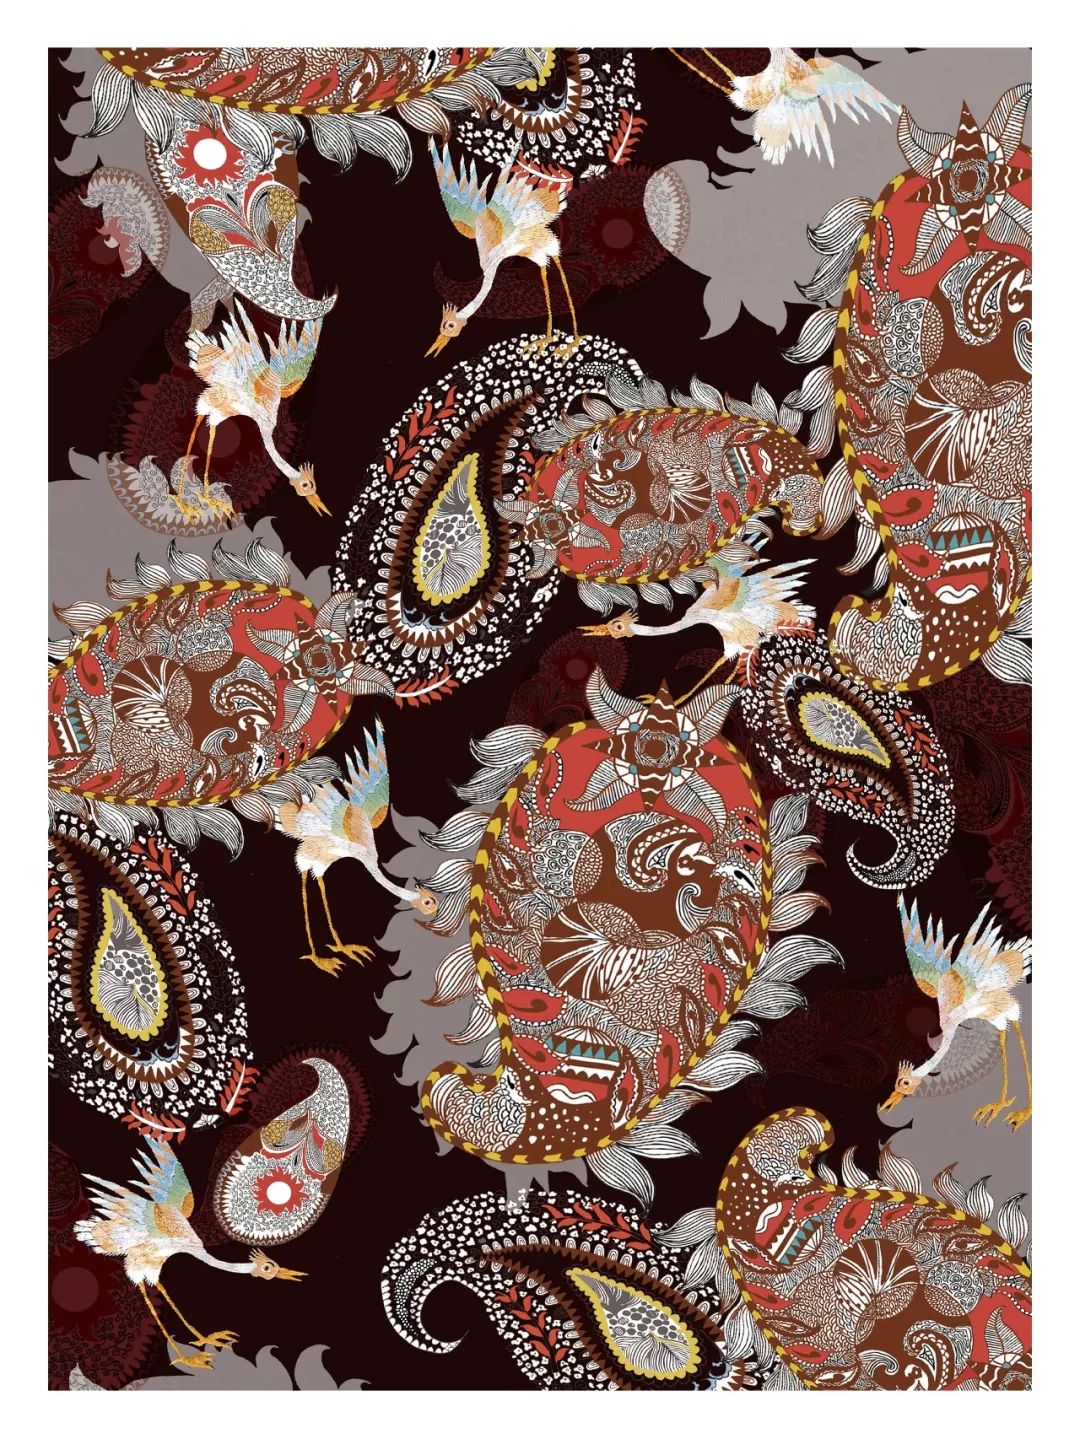 震泽丝绸杯·第三届中国丝绸家用纺织品创意设计大赛最佳传统纹样表现